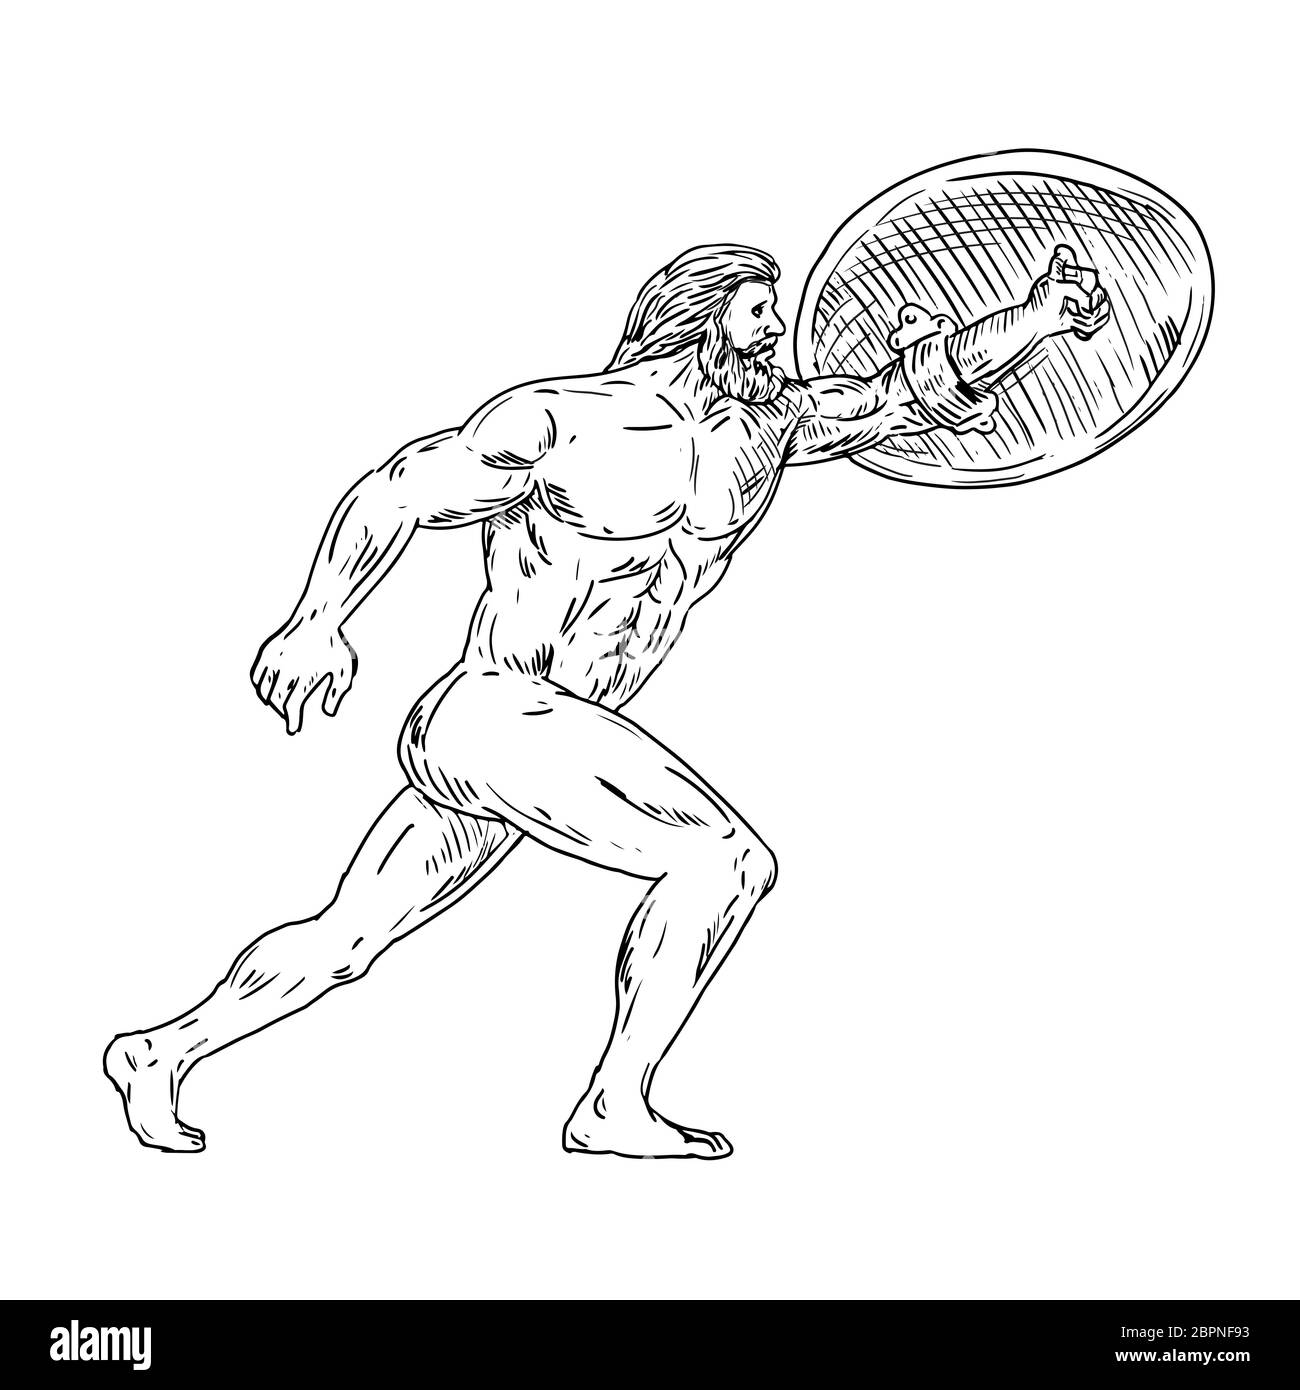 Dibujo Dibujo Ilustración estilo de Heracles, un héroe divino griego equivalente al héroe romano y Dios, Hércules con escudo y urginf avance hecho en b Foto de stock